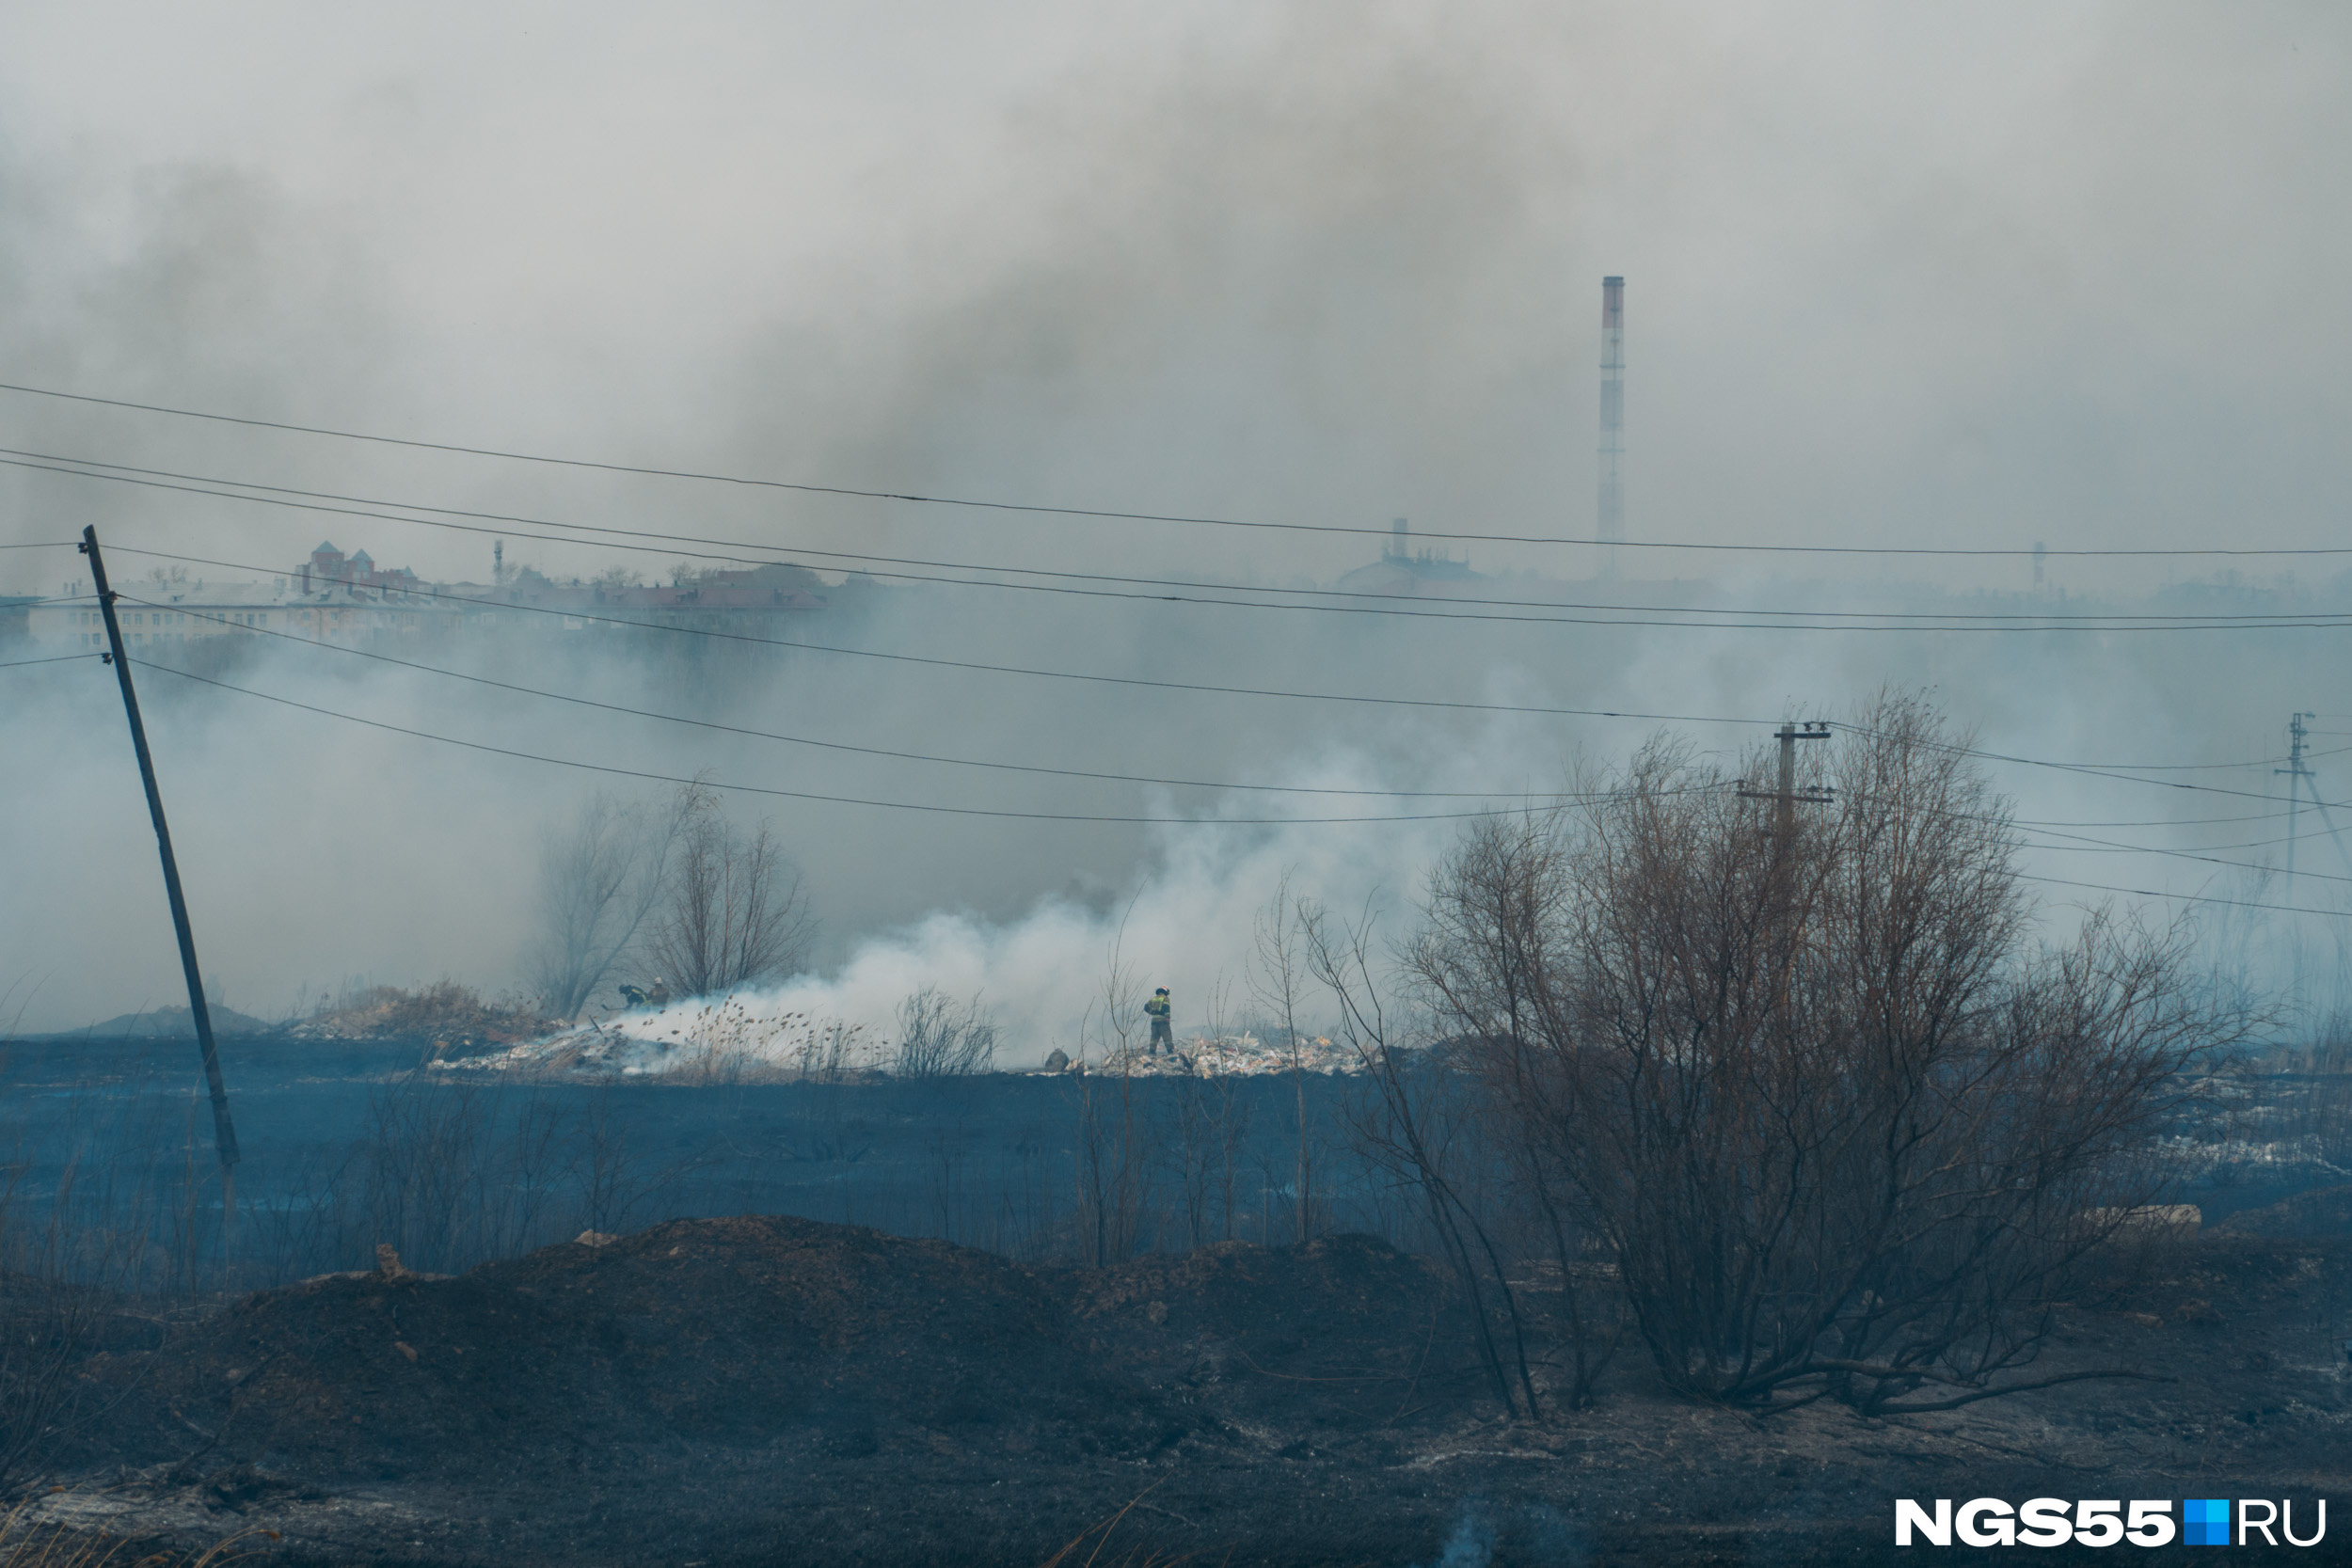 Что горит на левом берегу. Пожар в Омске на левом берегу. Пожар в Омске вчера на левом берегу. Пожар в Омске сегодня на левом берегу. Пожар в поле.